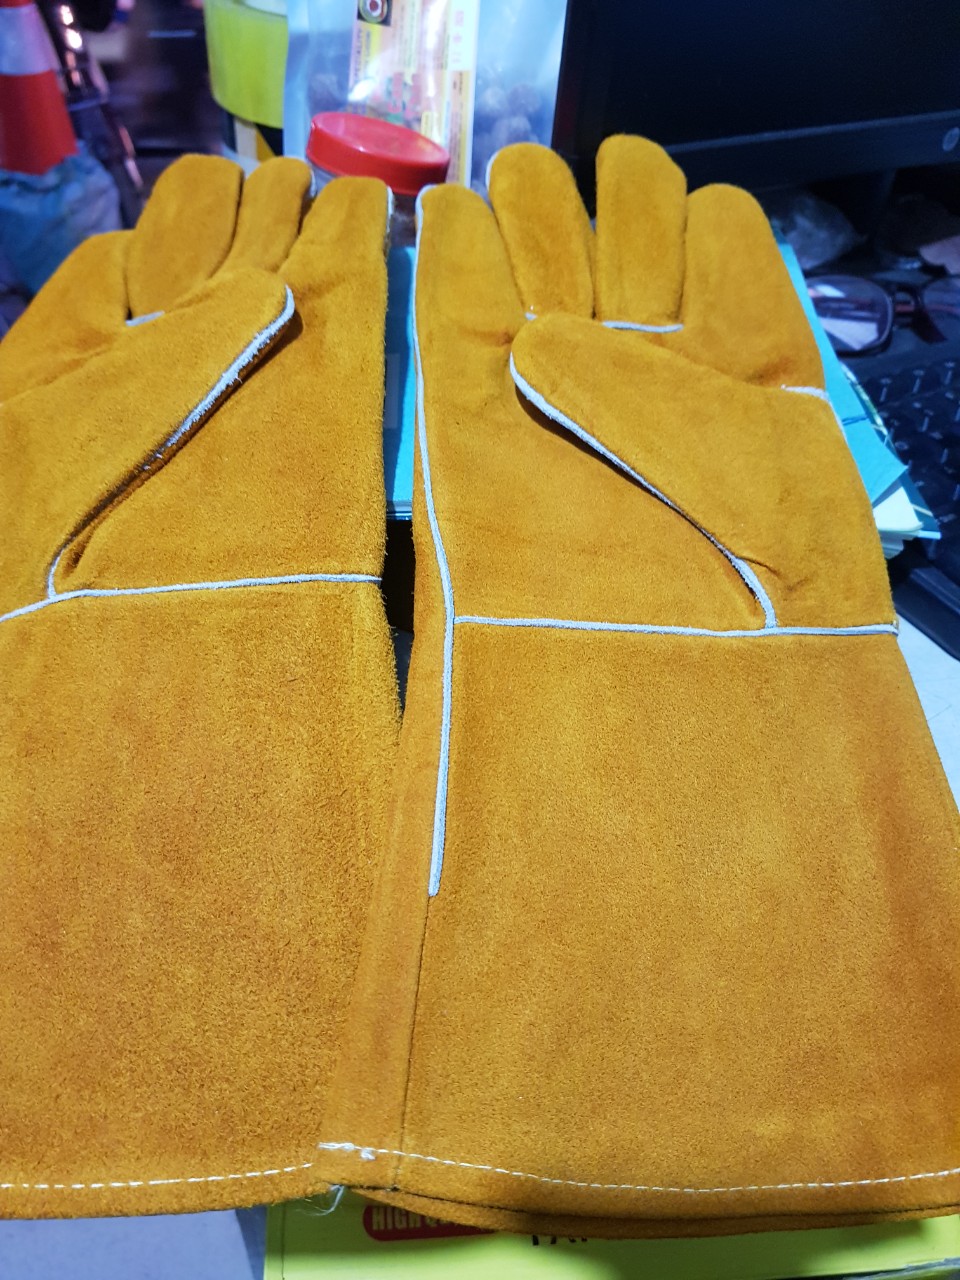 Găng tay hàn Everest EW14 Bao tay hàn da lộn, chống cháy, chịu nhiệt/tia lửa văng bắn, lớp lót chống hầm bí